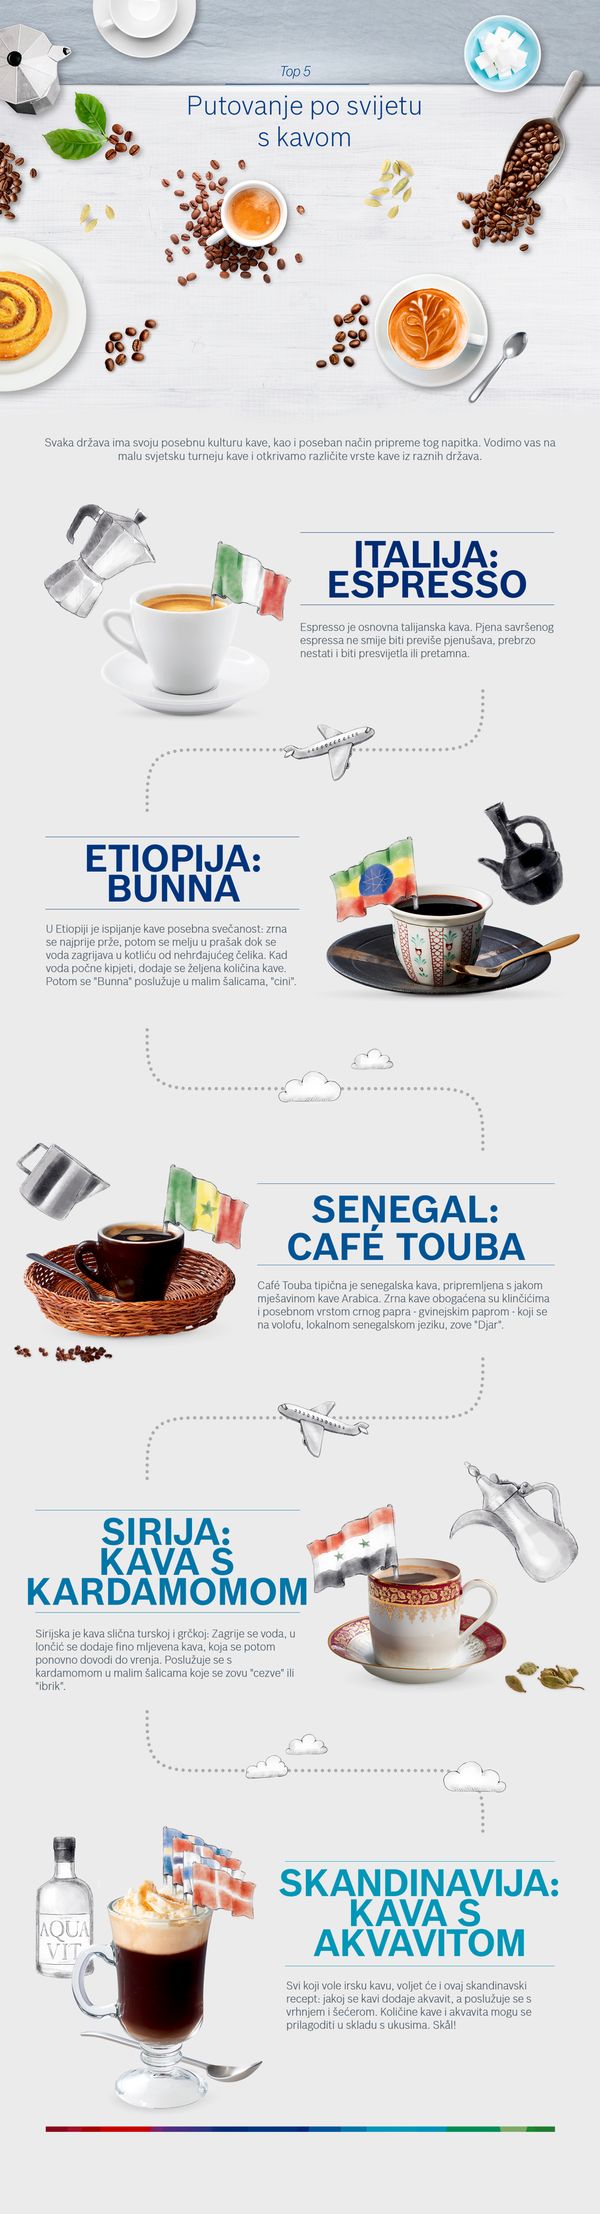 Putovanje po svijetu s kavom